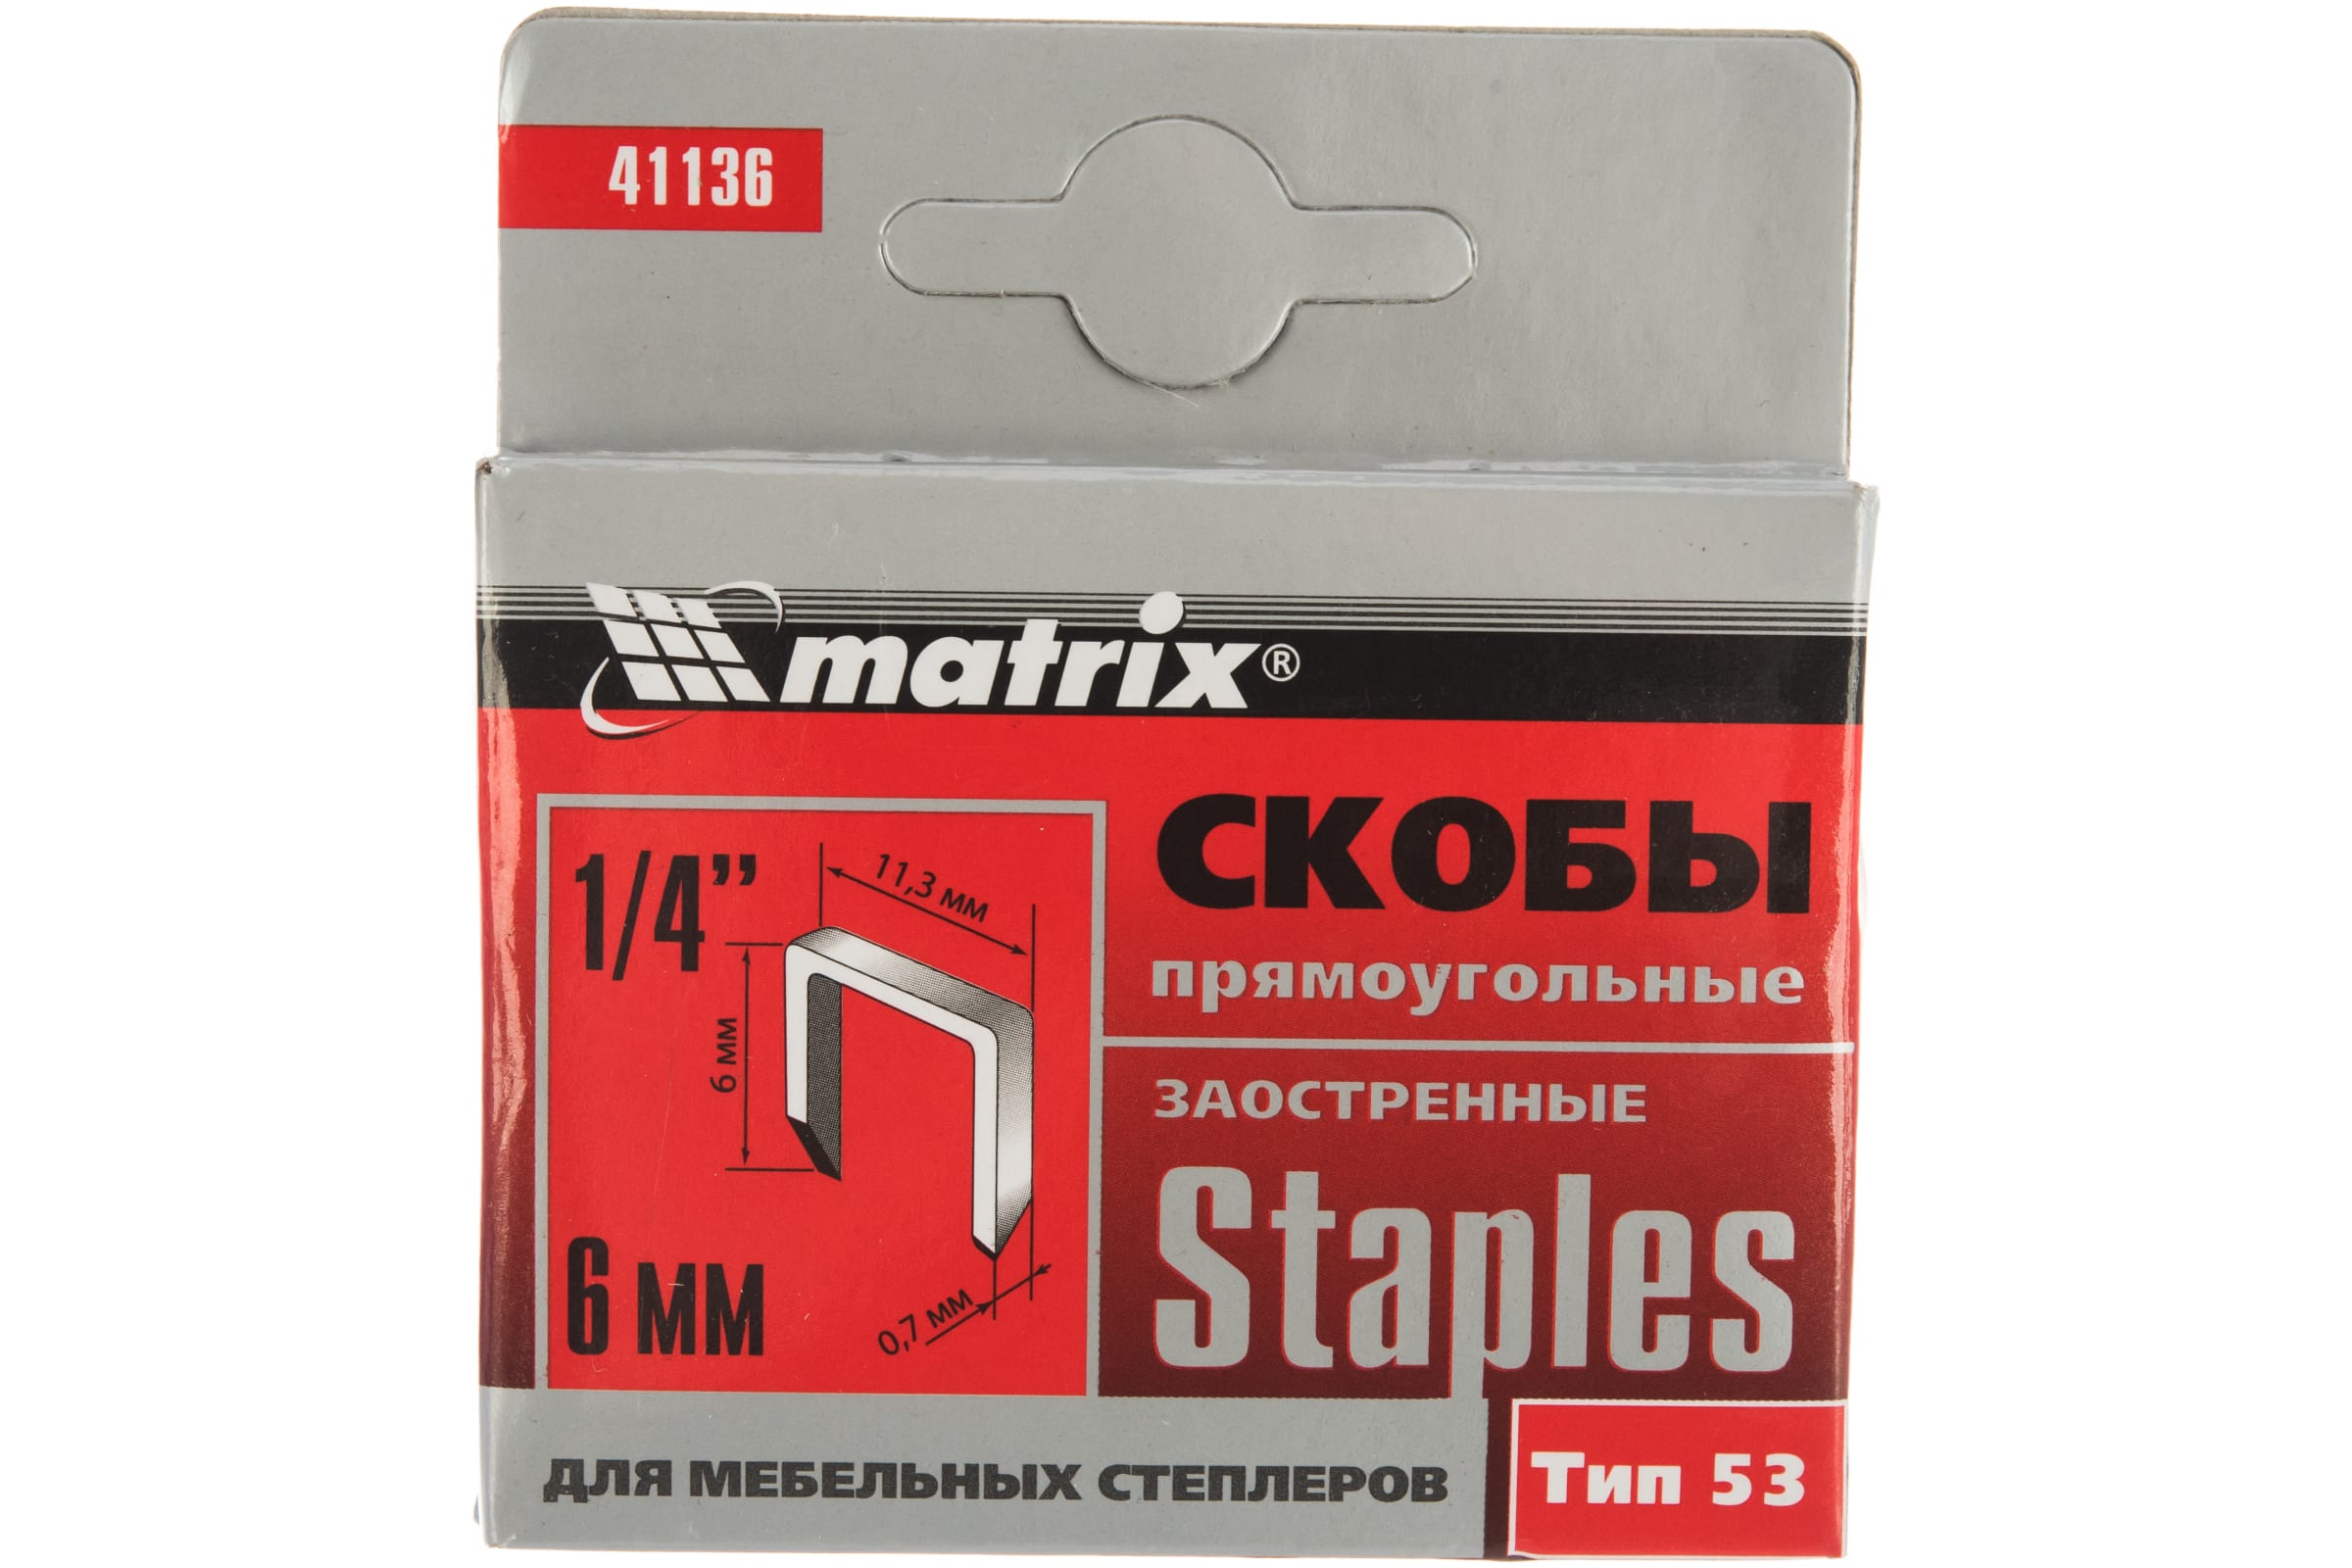 Скобы для электростеплера MATRIX 41136 скобы 18ga для пнев степлера 1 25х1 0мм длина 13 мм ширина 5 7 мм 5000 шт matrix